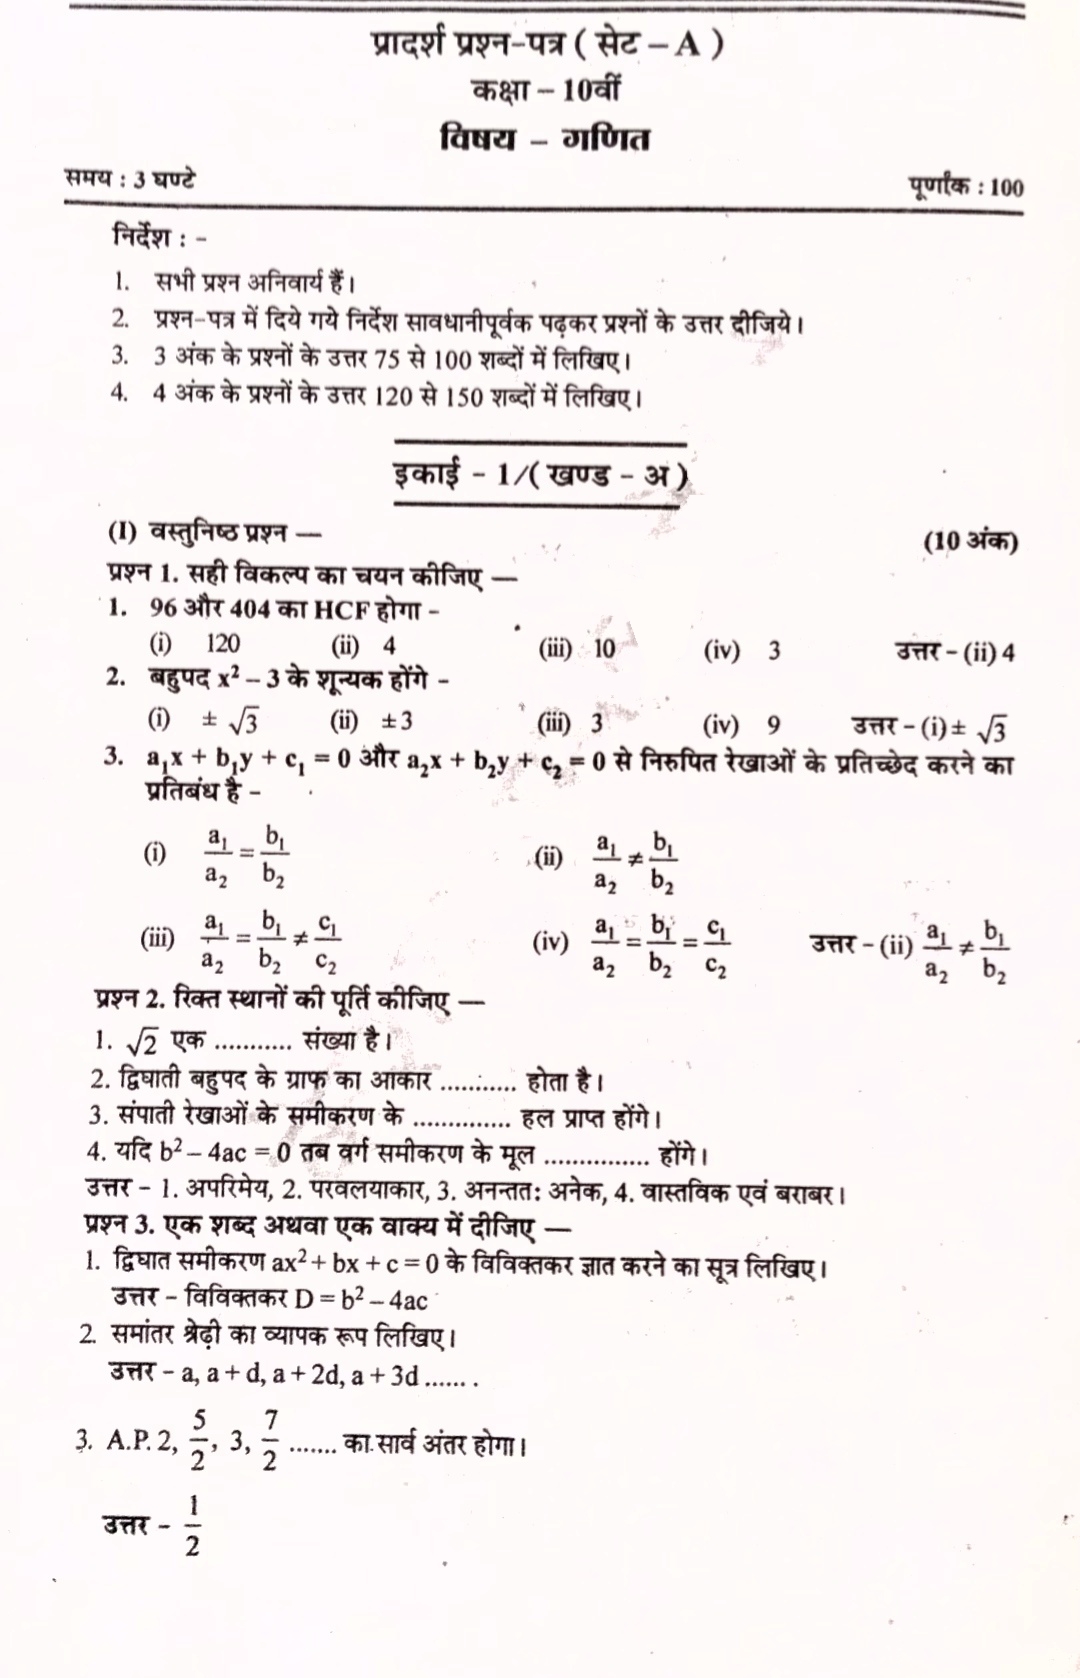 Math Sample Paper Class 10, Sample Paper Class 10 Maths with Solution, Sample Paper Class 10 Maths 2021 Standard, class 10 math sample paper PDF download,